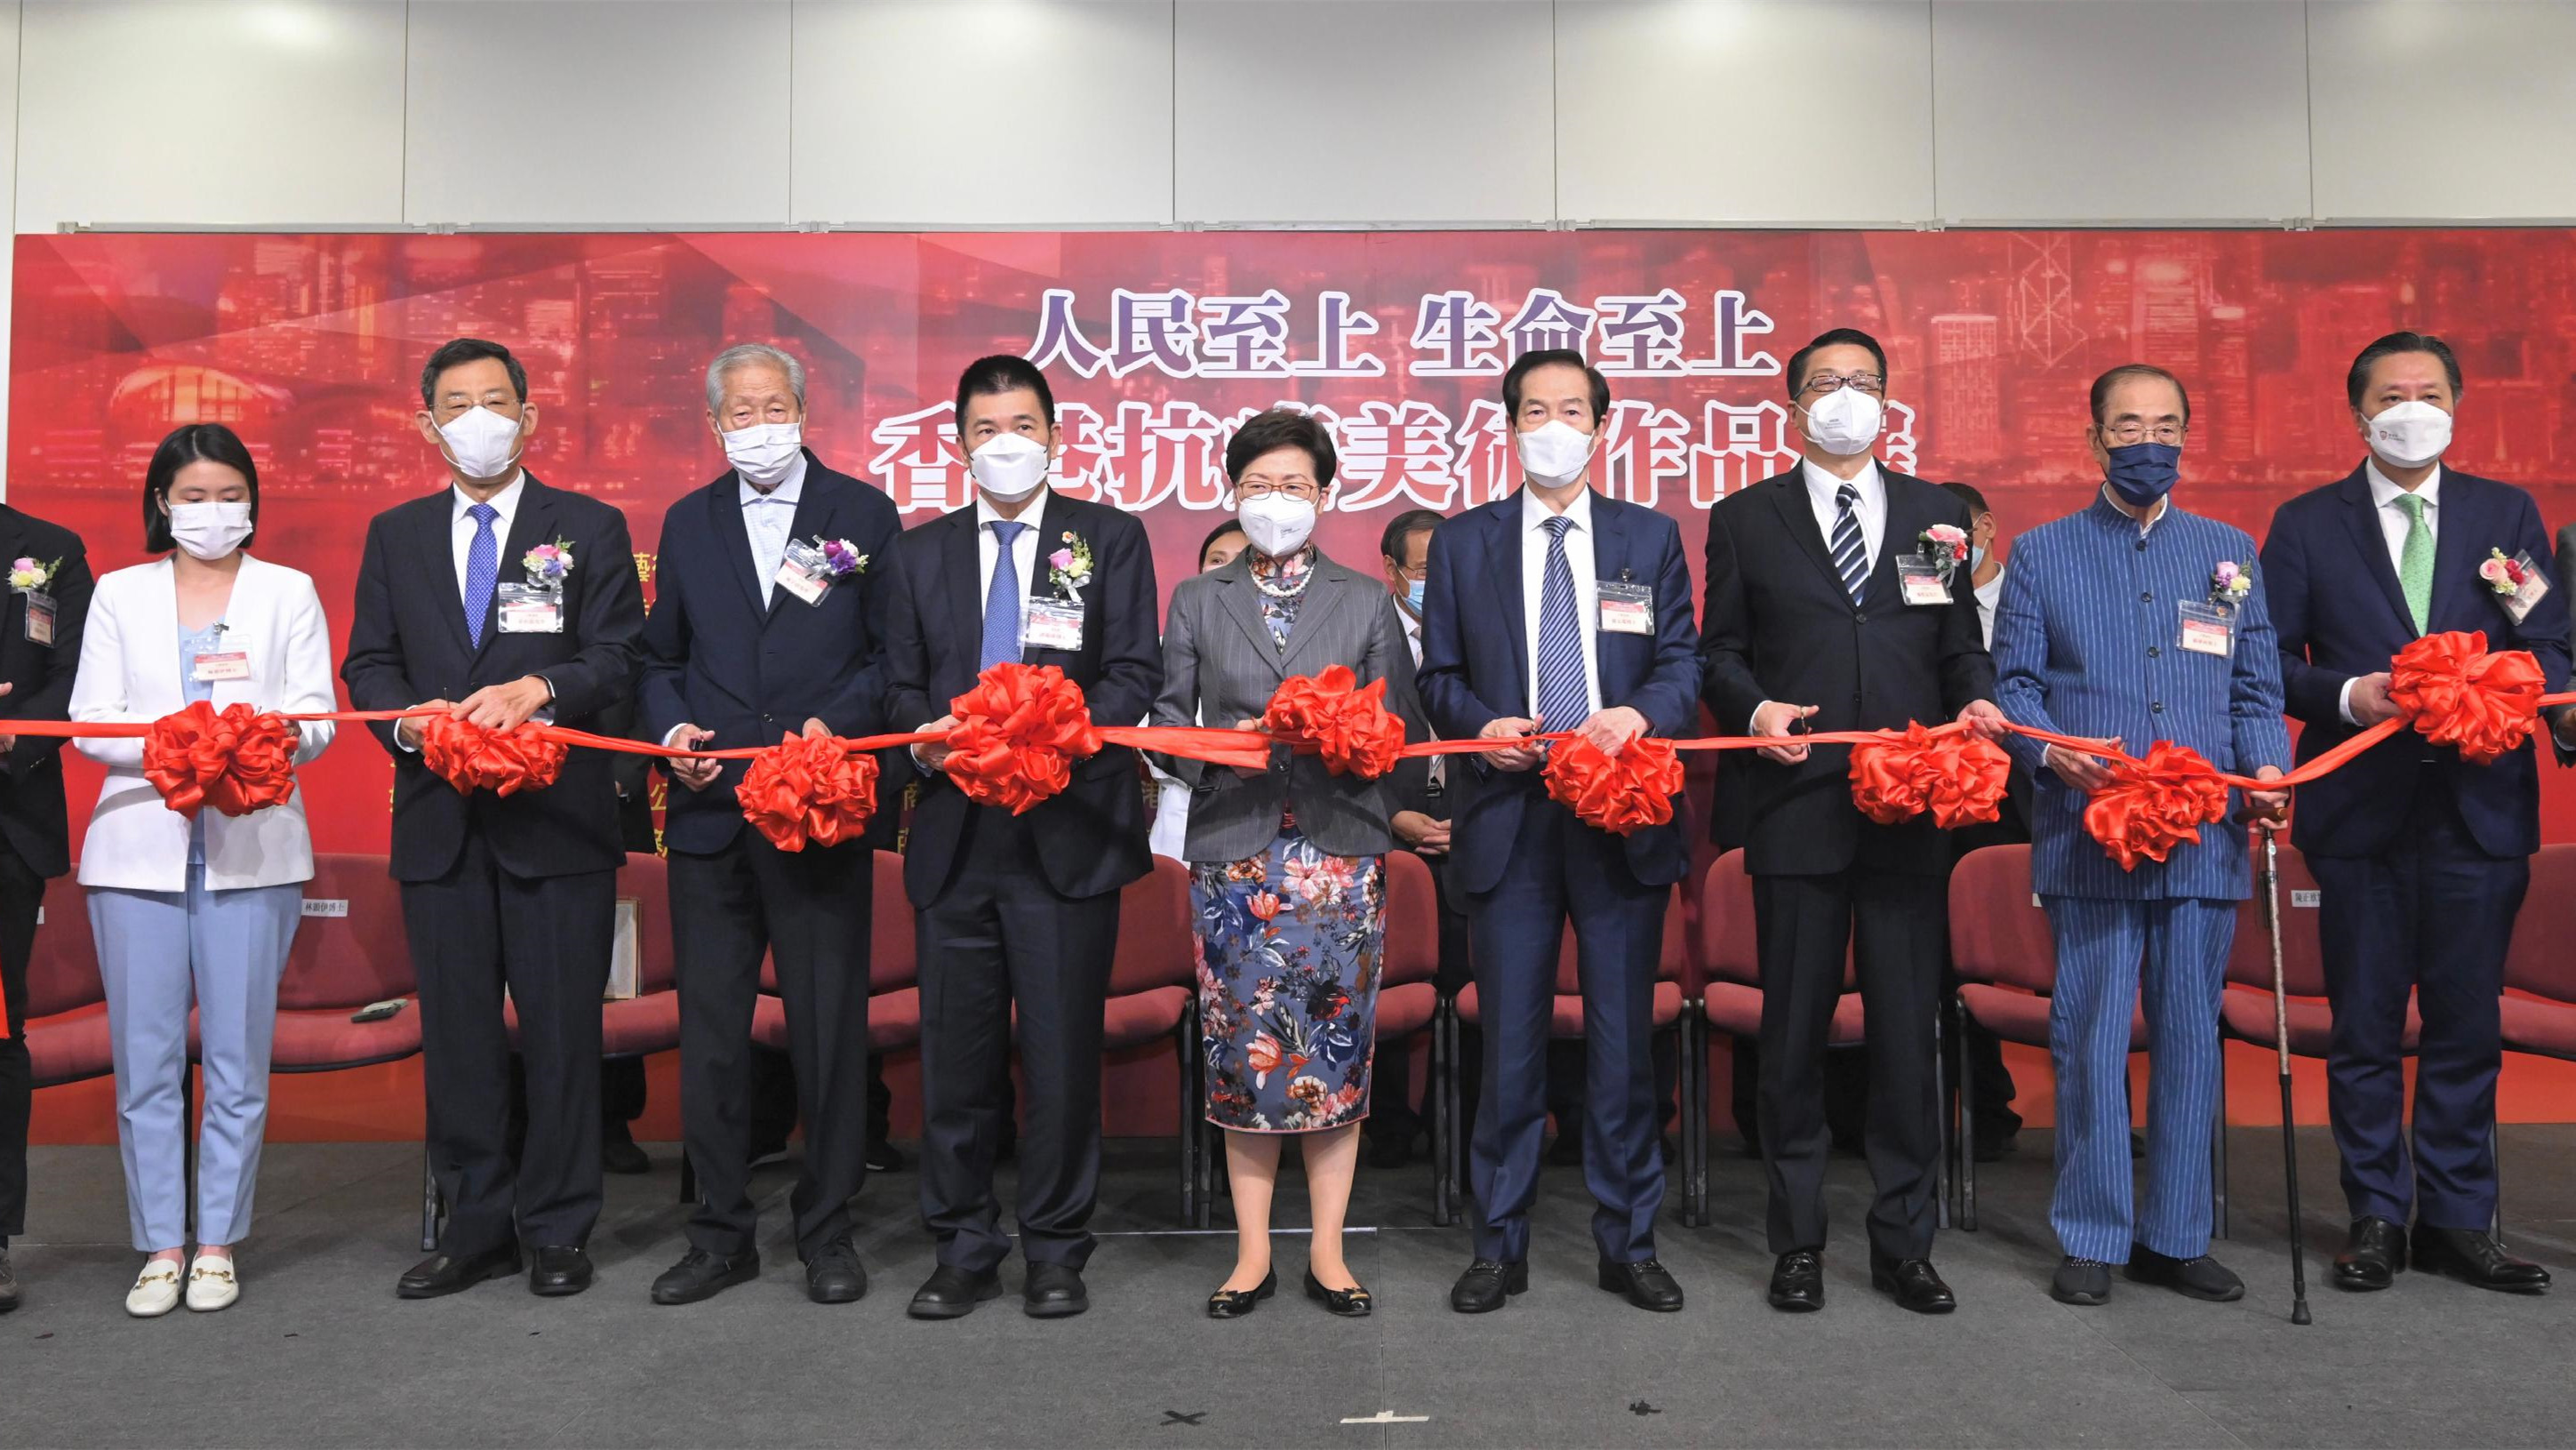 香港抗疫美術作品展頒獎典禮在港舉行